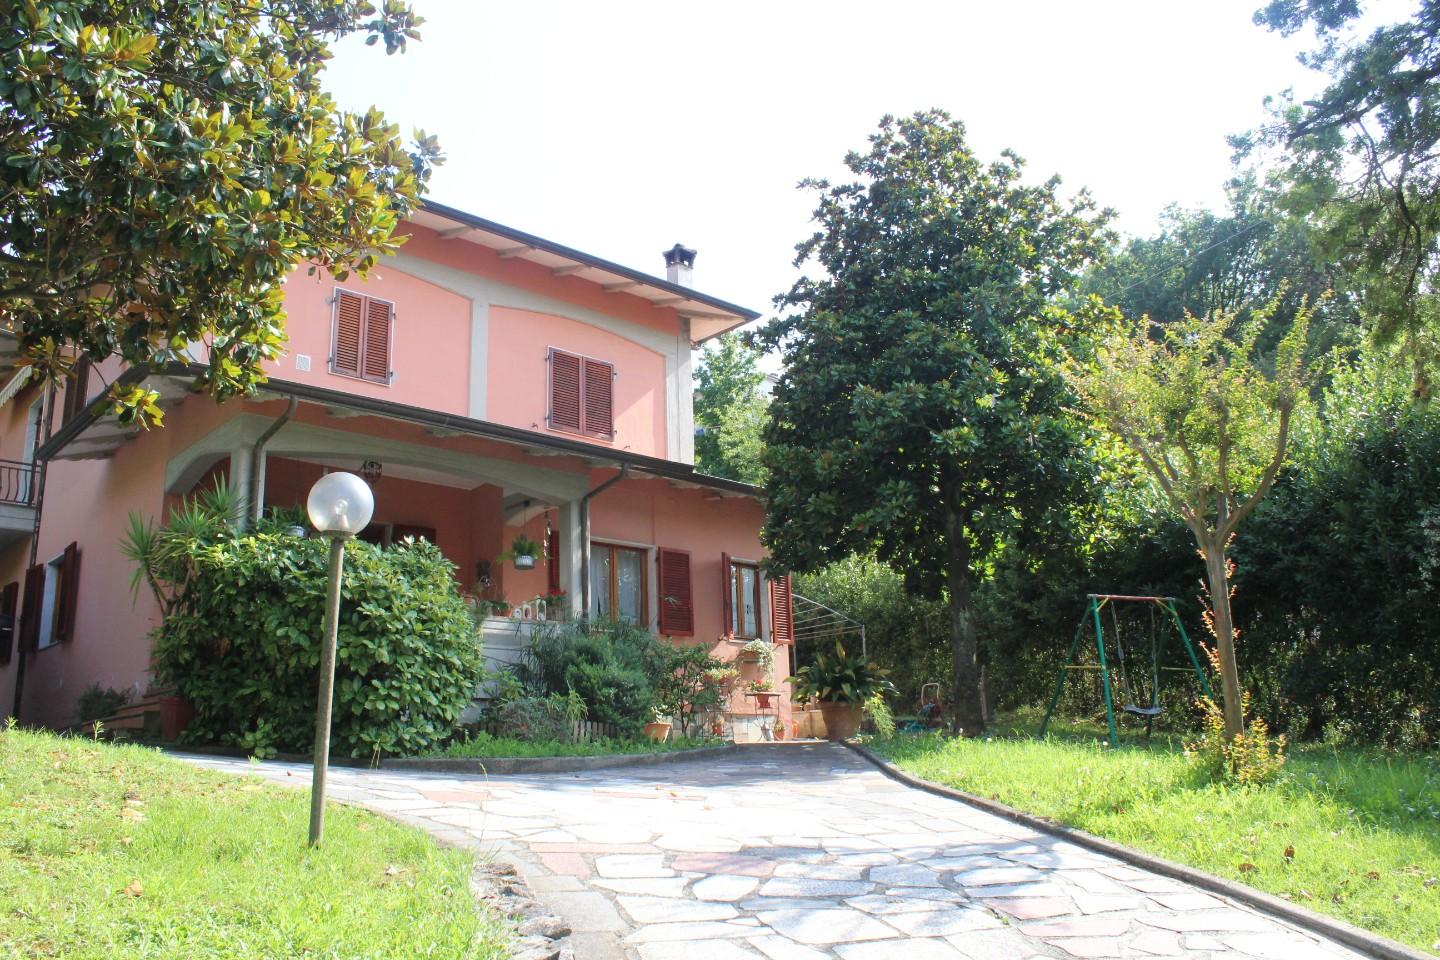 Casa indipendente con giardino, Carrara codena